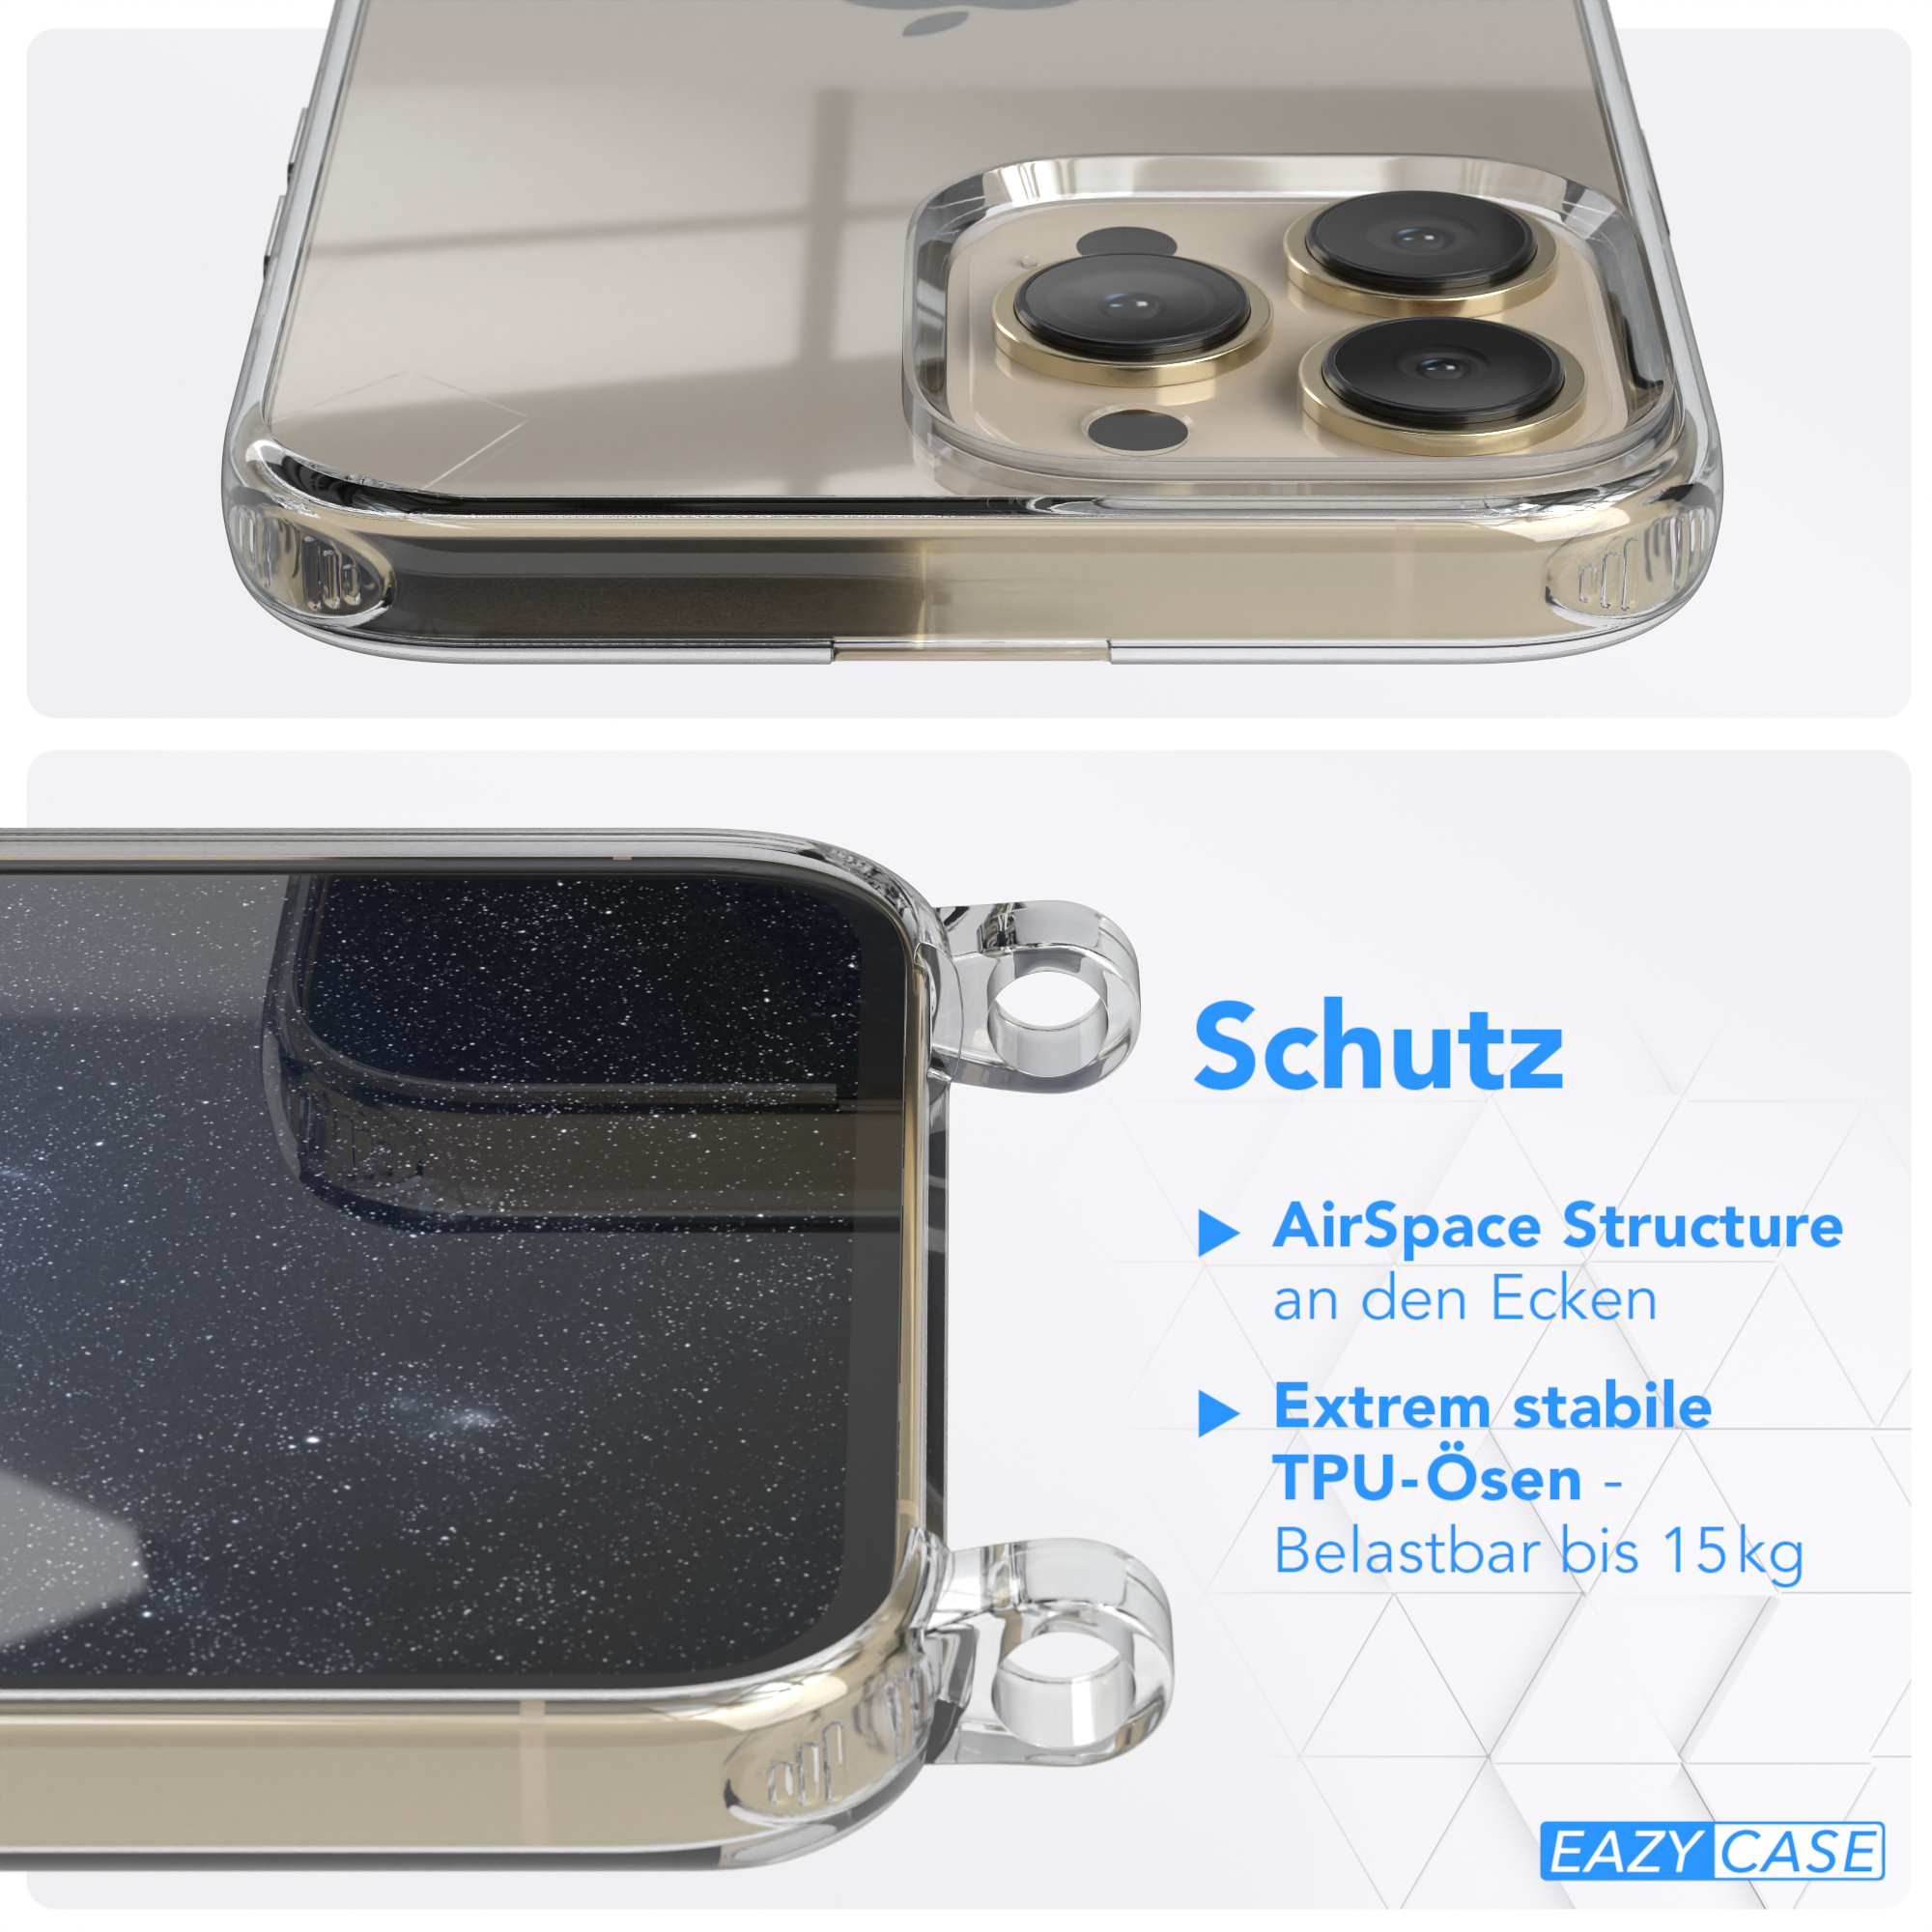 Transparente Kordel Max, Pro 13 Nachtblau mit Handyhülle Apple, EAZY Umhängetasche, / runder + Karabiner, iPhone CASE Gold